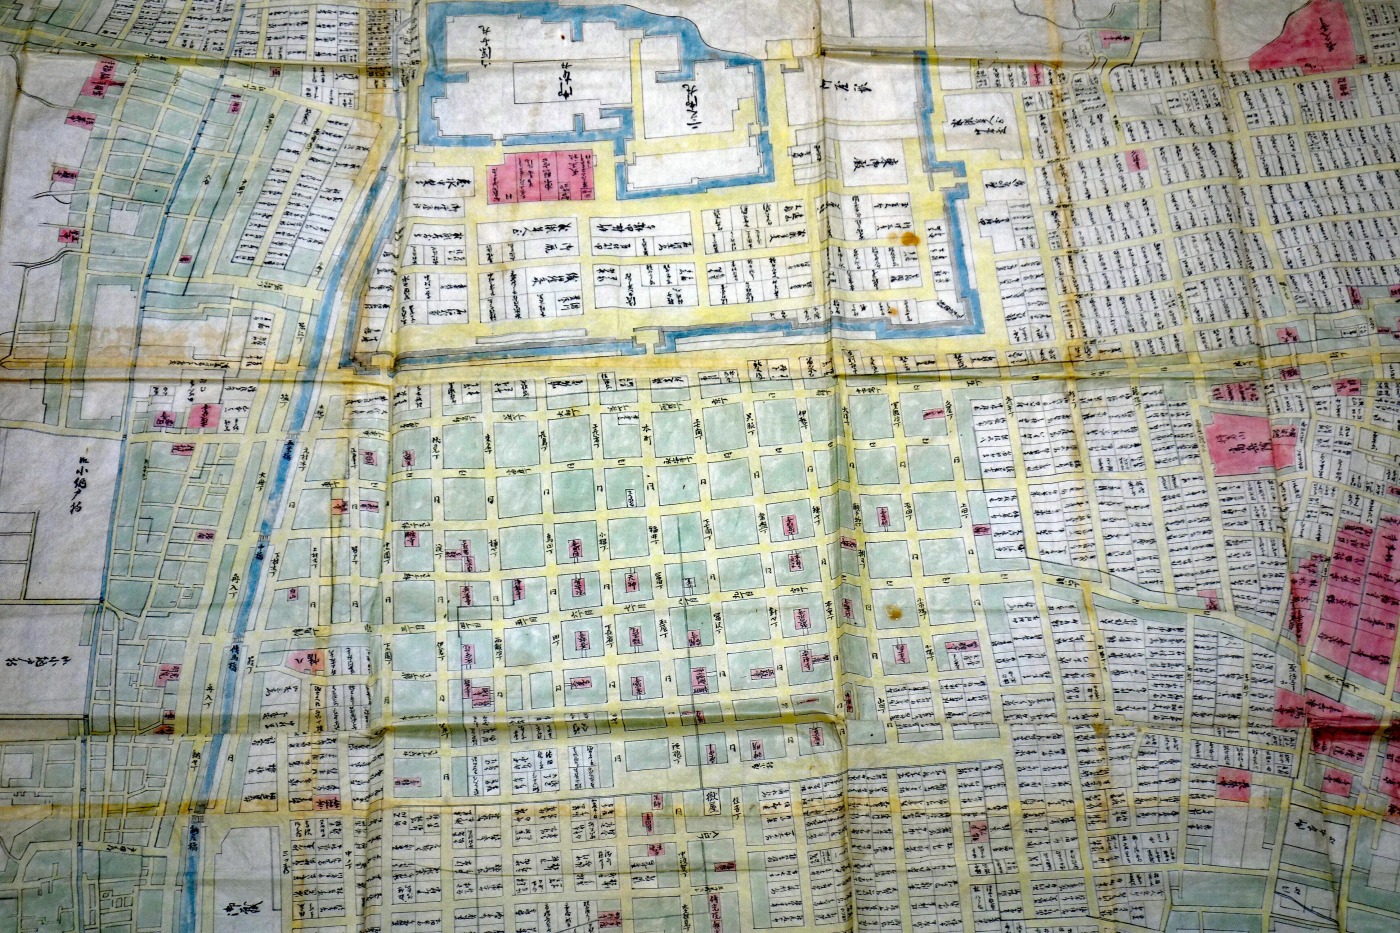 大名古屋新地図 中部日本新聞社 発行 製作納入 地学図書株式会社 1959 